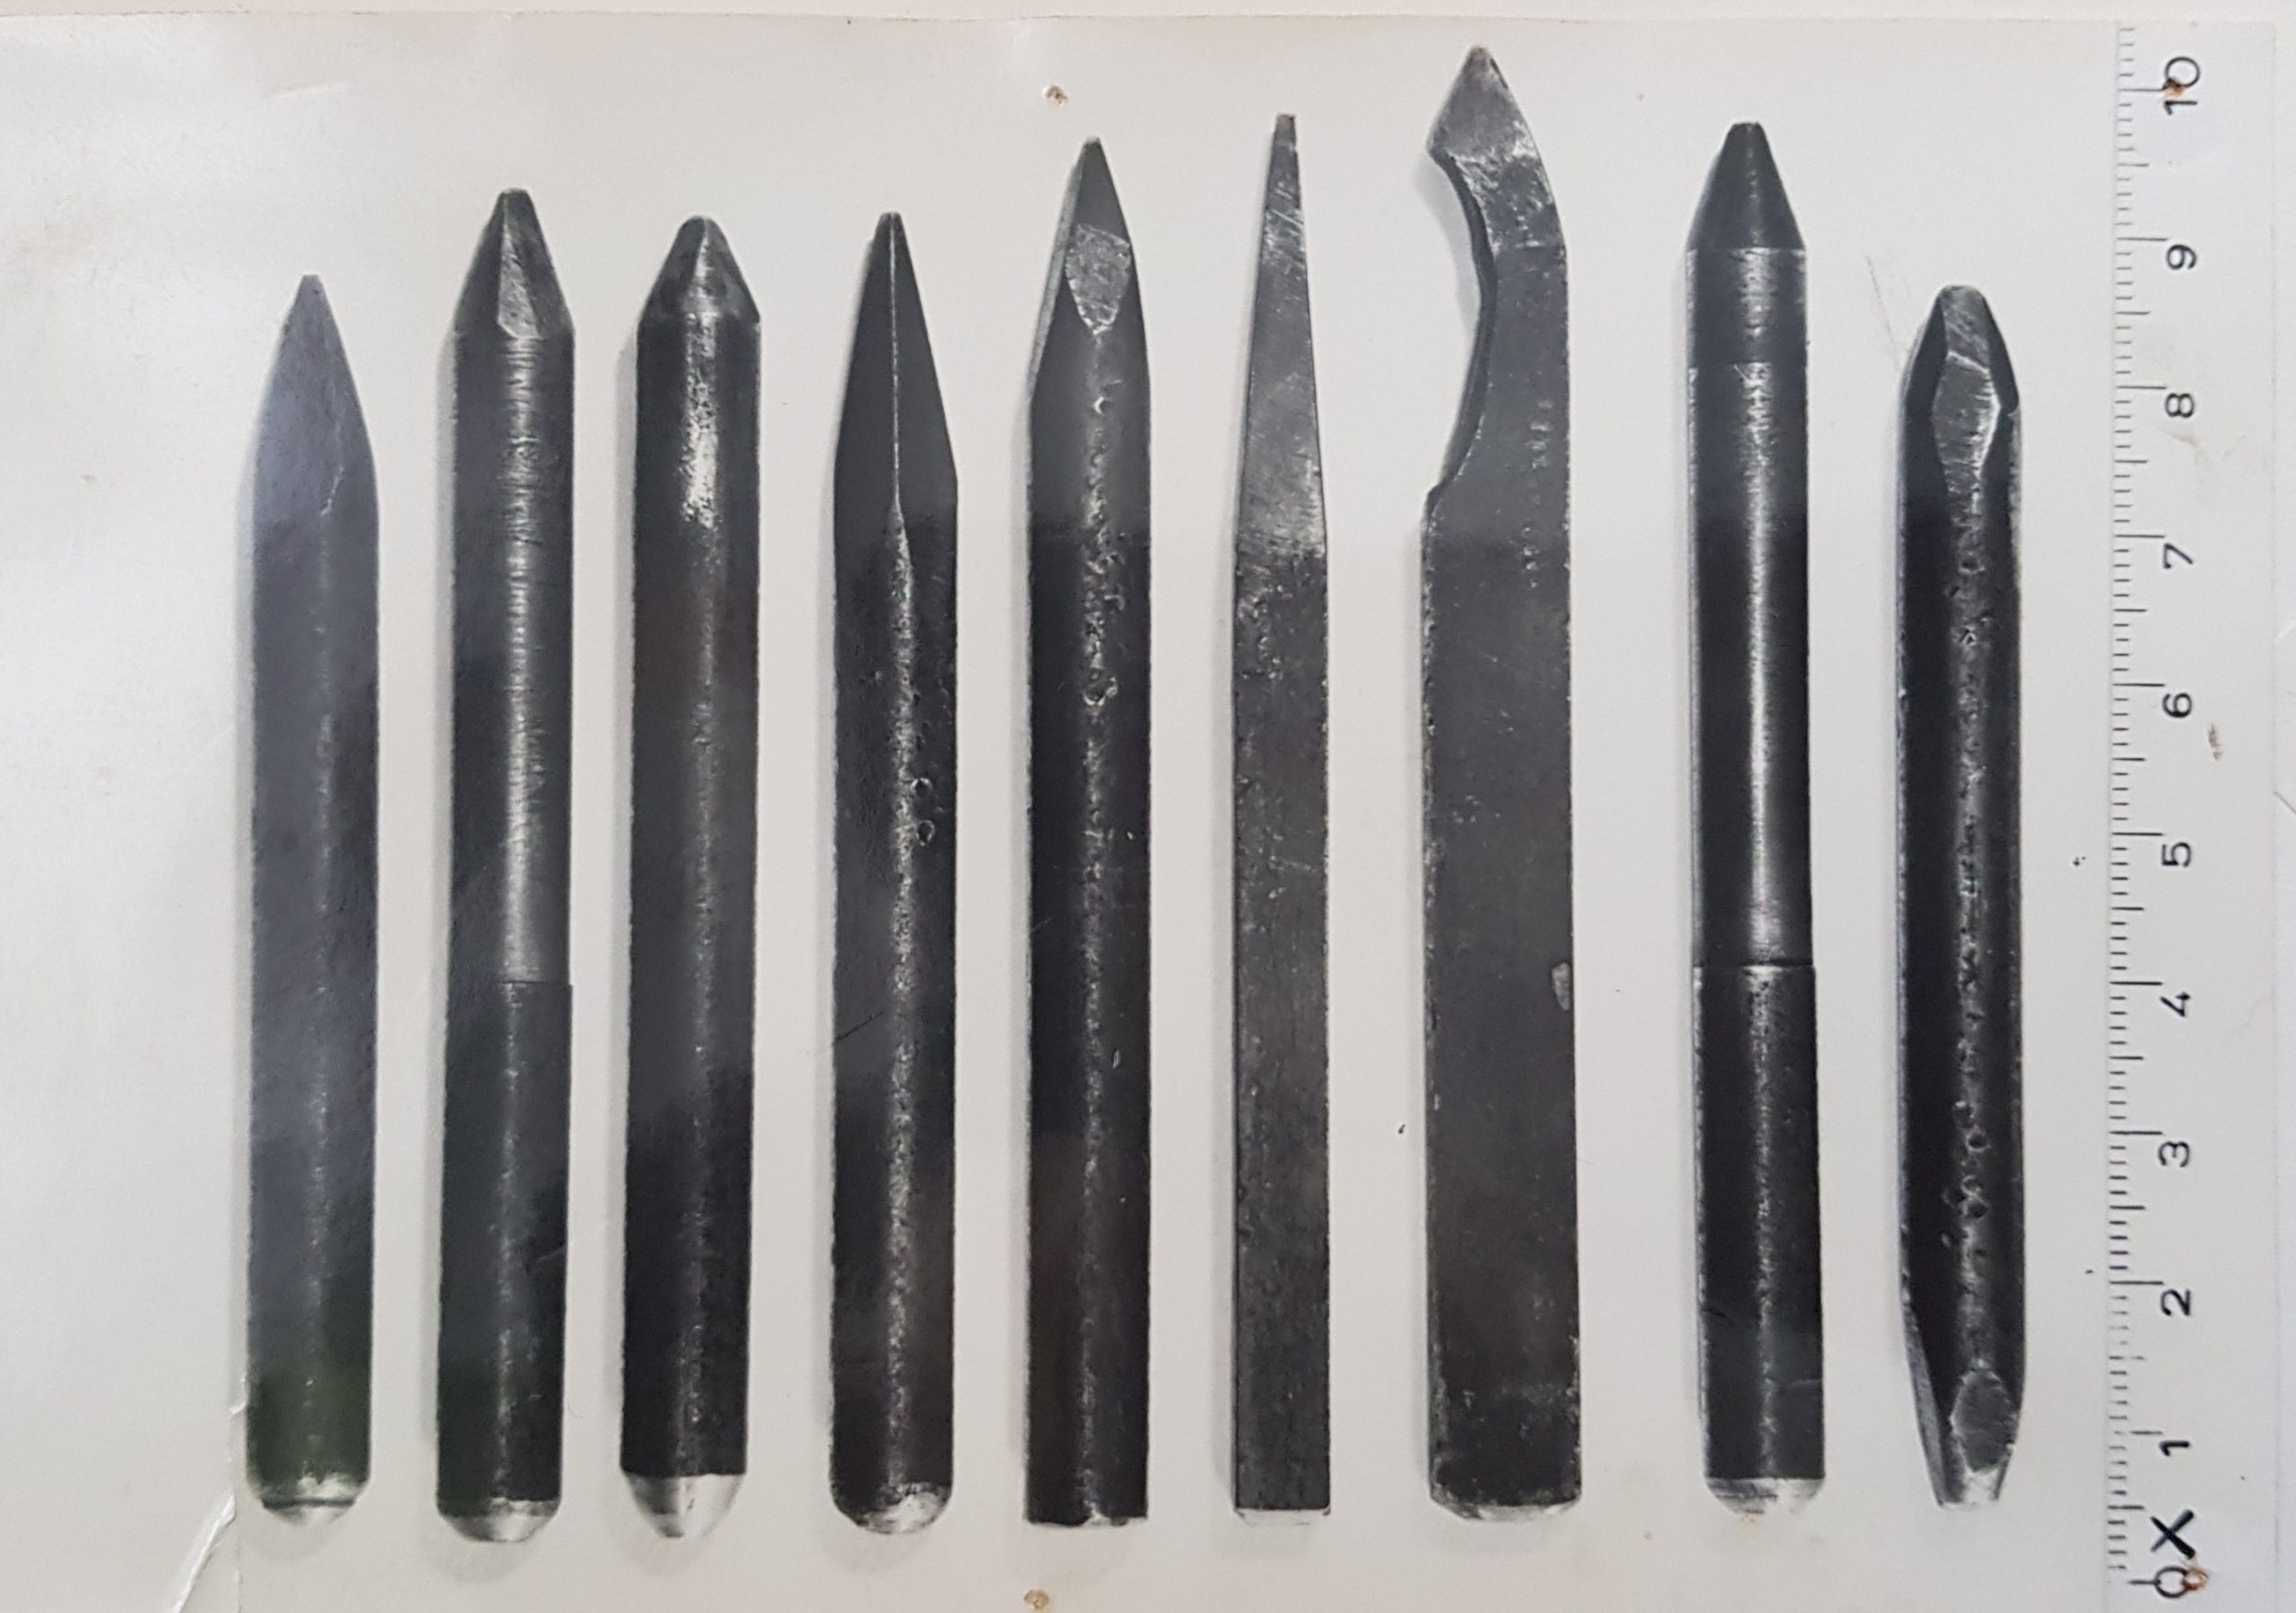 Een zwart wit foto uit 1965 toont 9 metalen staafjes op een witte achtergrond. Helemaal rechts geeft een meetlint aan dat de intstrumenten tussen de 8 en 10 centimeter lang zijn.